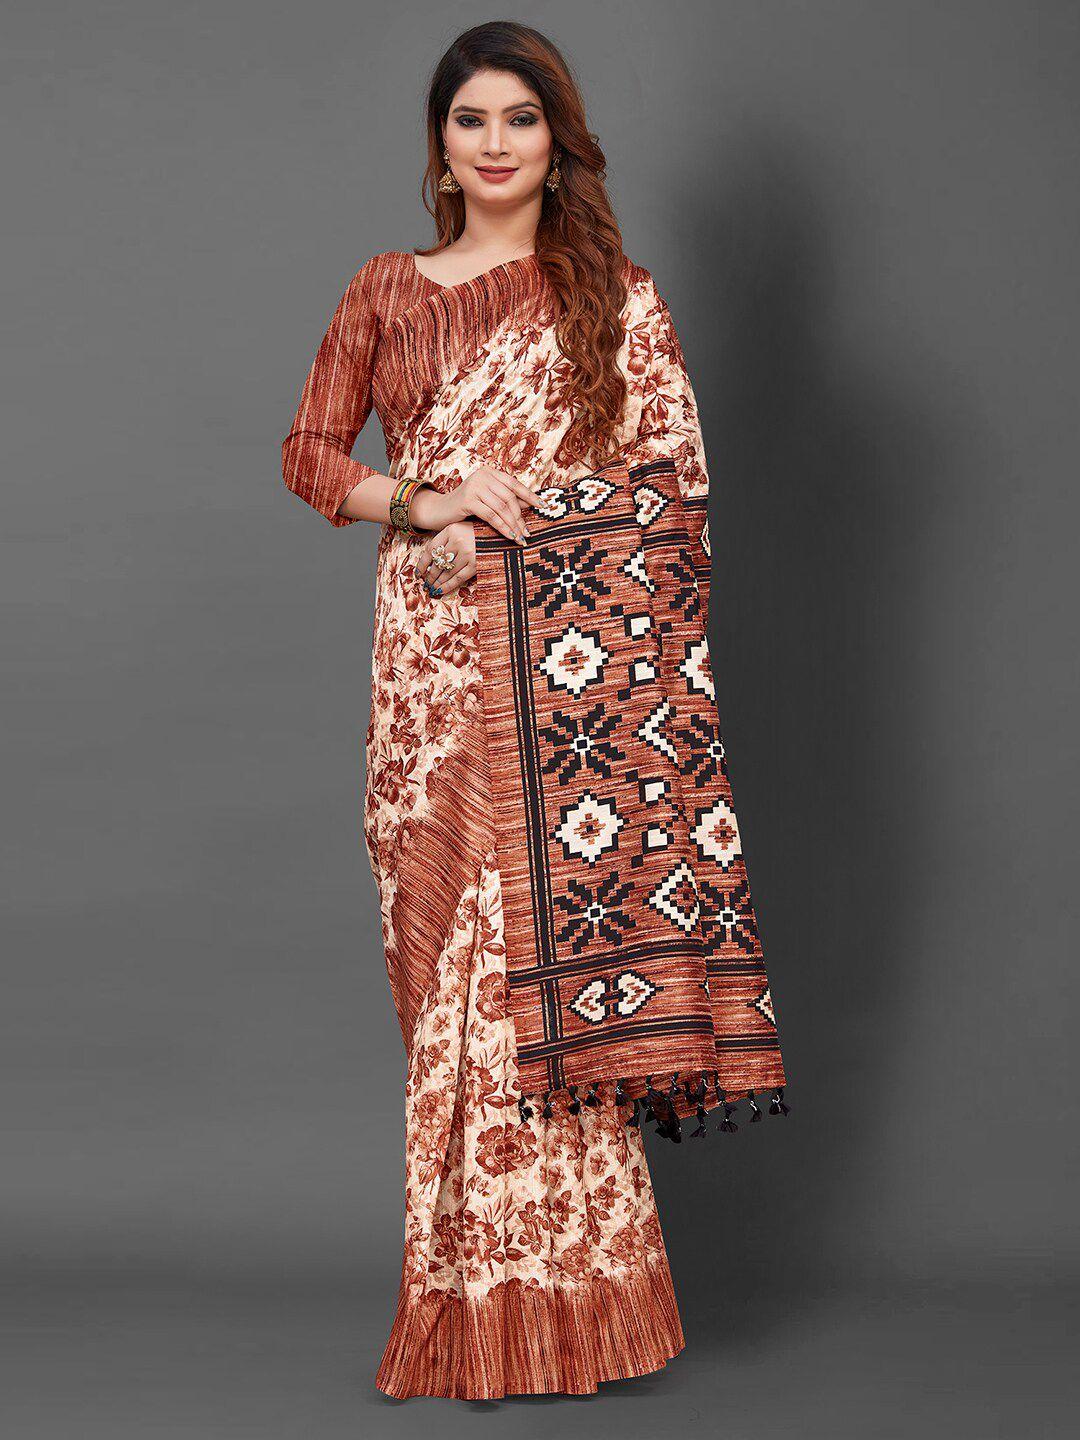 kalini floral printed art silk saree